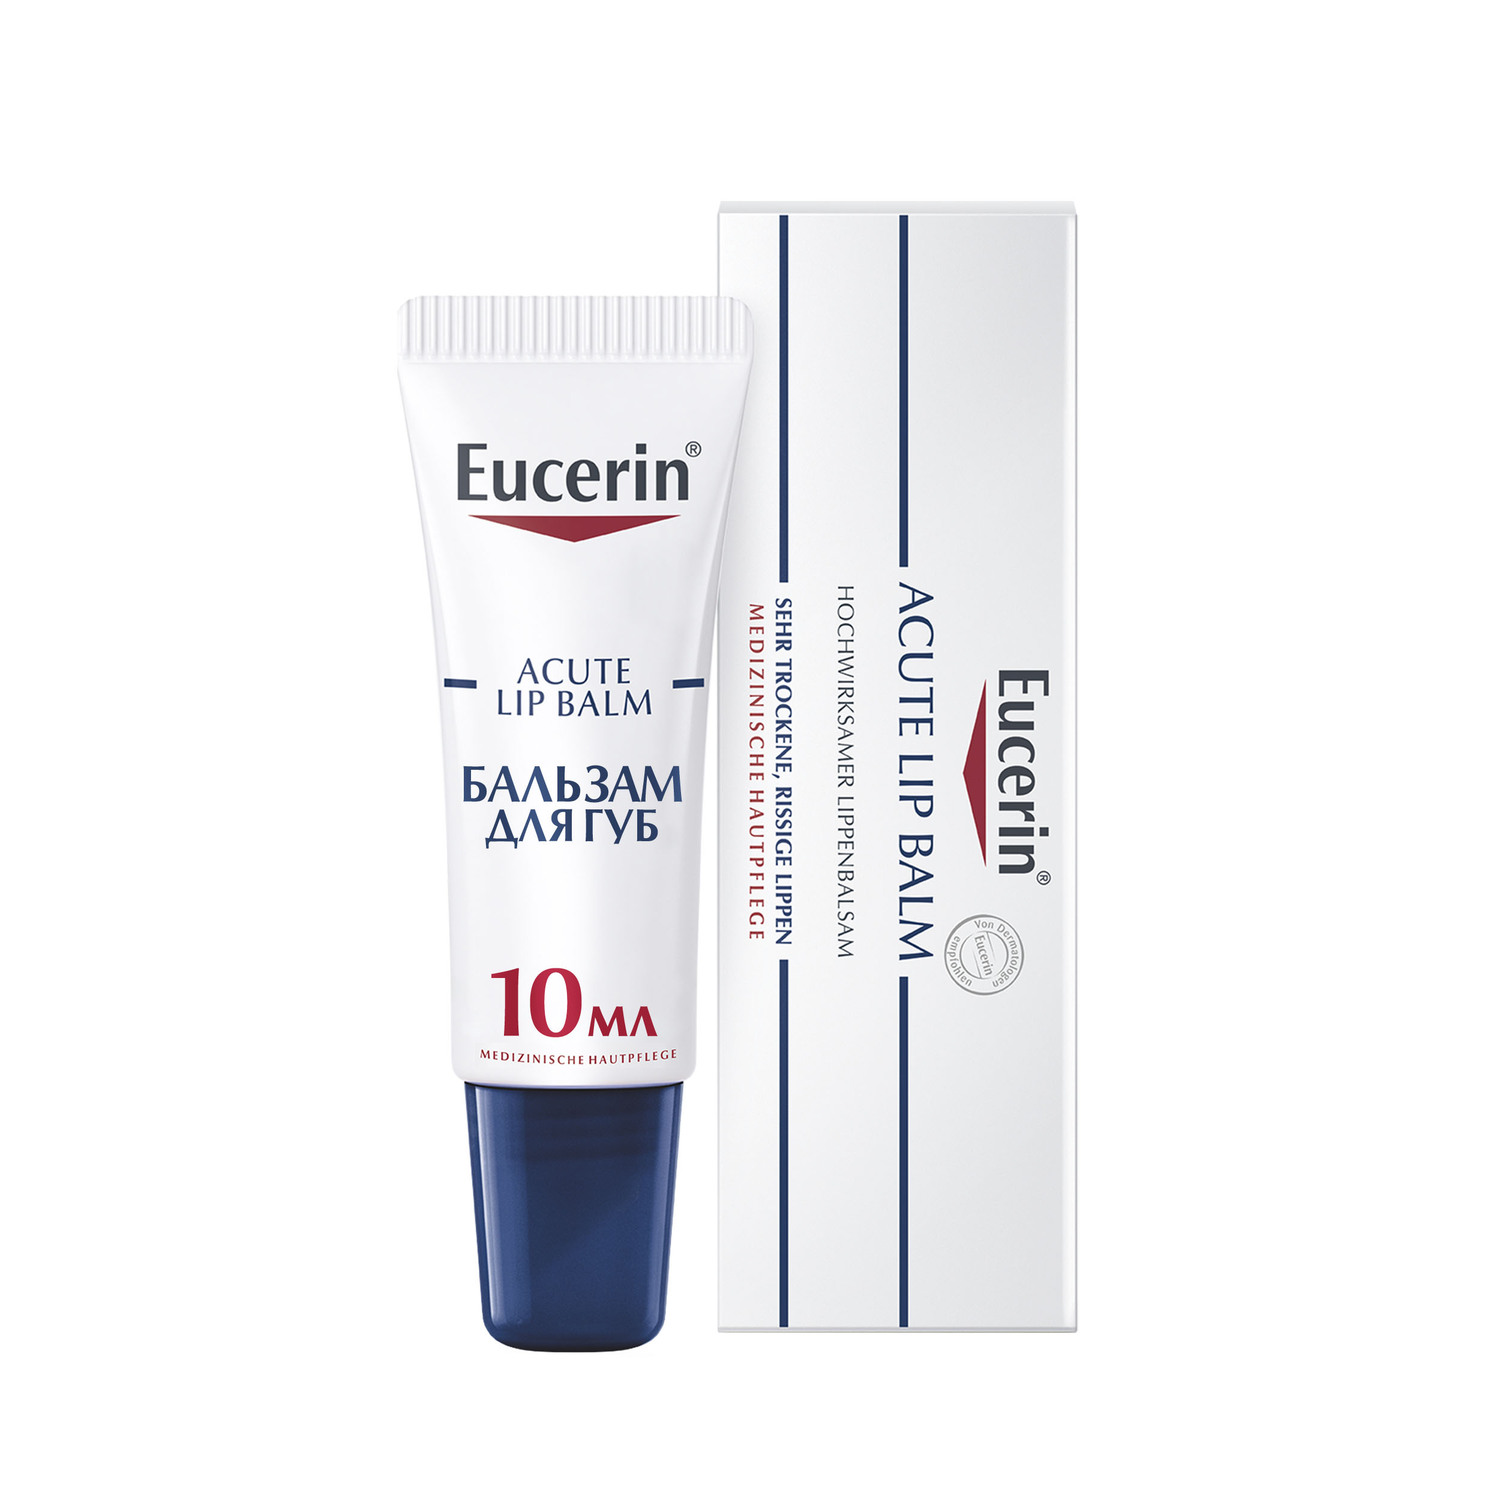 Eucerin Успокаивающий и увлажняющий бальзам для губ для взрослых и детей, 10 мл (Eucerin, UreaRepair) eucerin успокаивающий и увлажняющий бальзам для губ для взрослых и детей 10 мл eucerin urearepair